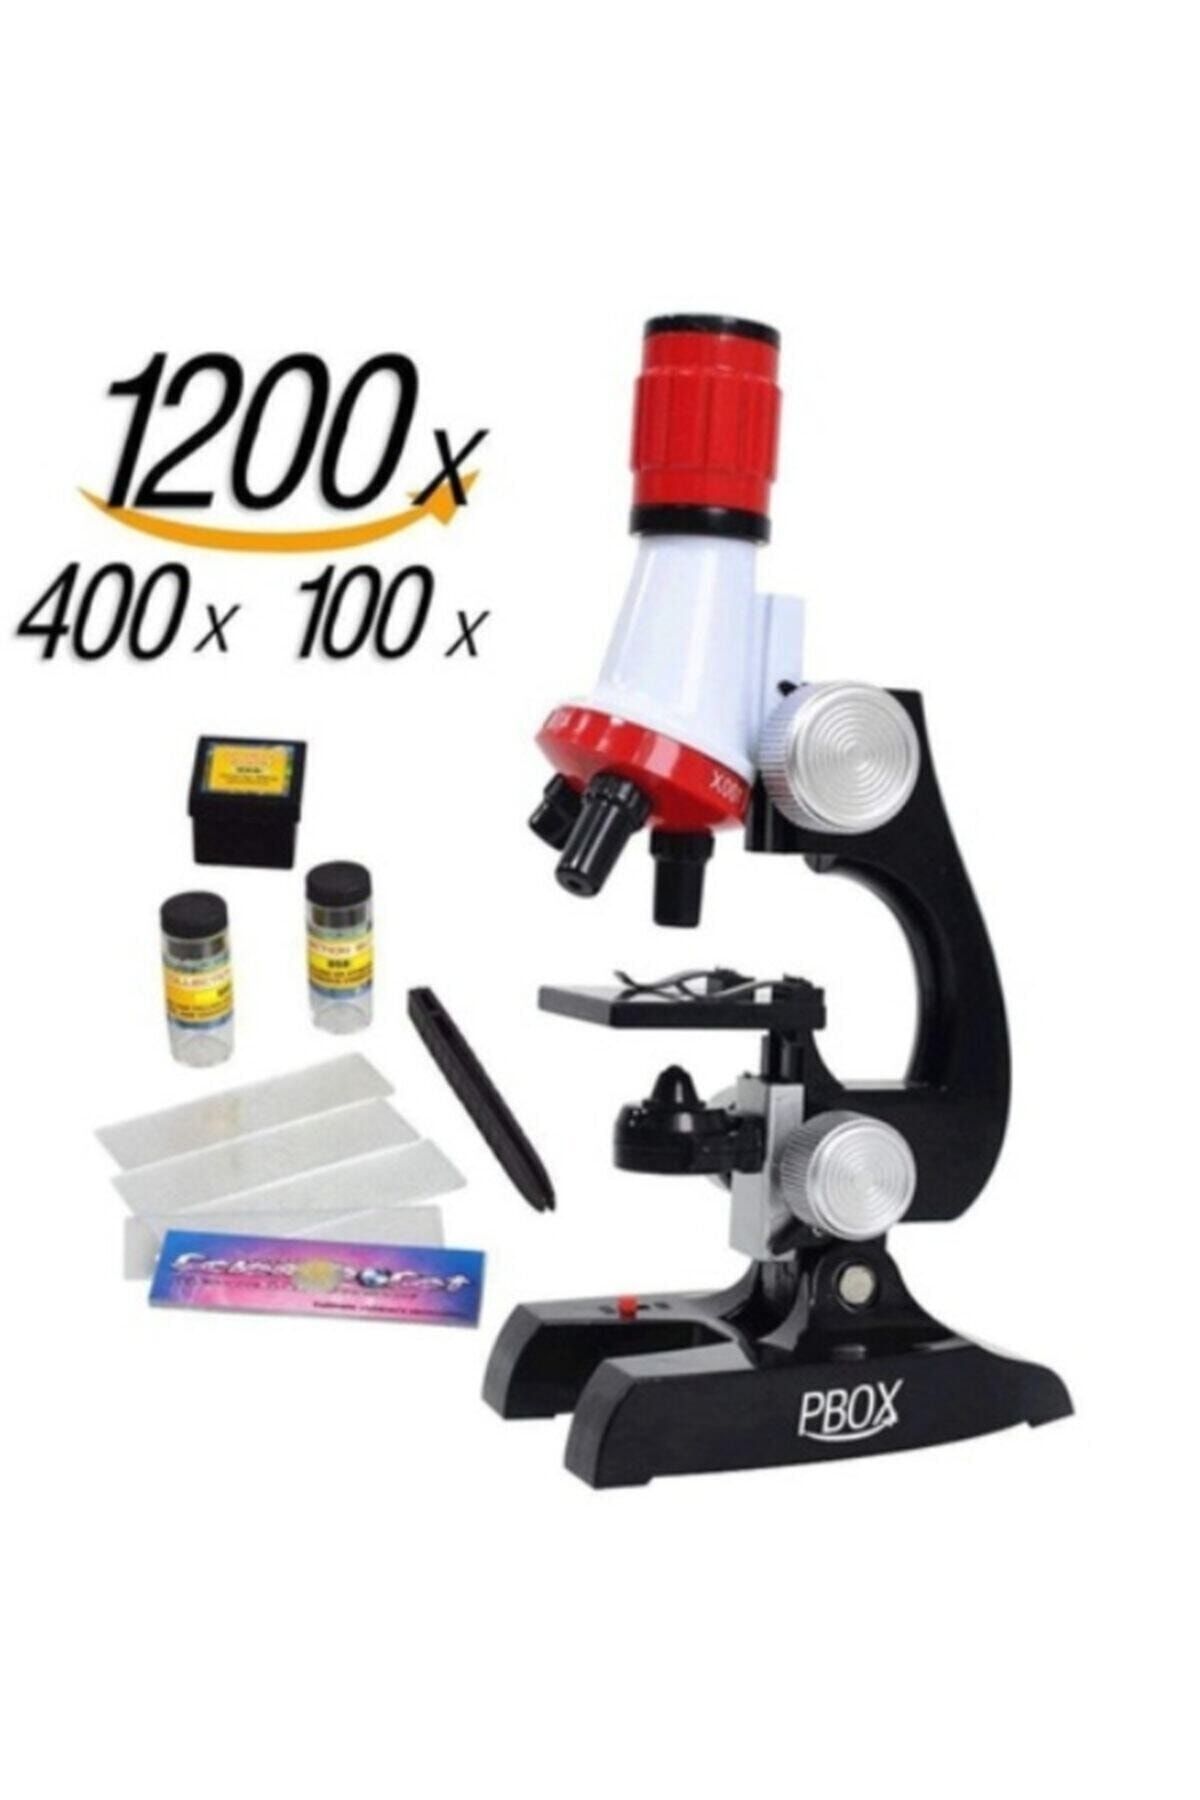 Elif İş Eğitim Mikroskop 100x 400x 1200x Science Mikroskop Seti Led Işıklı